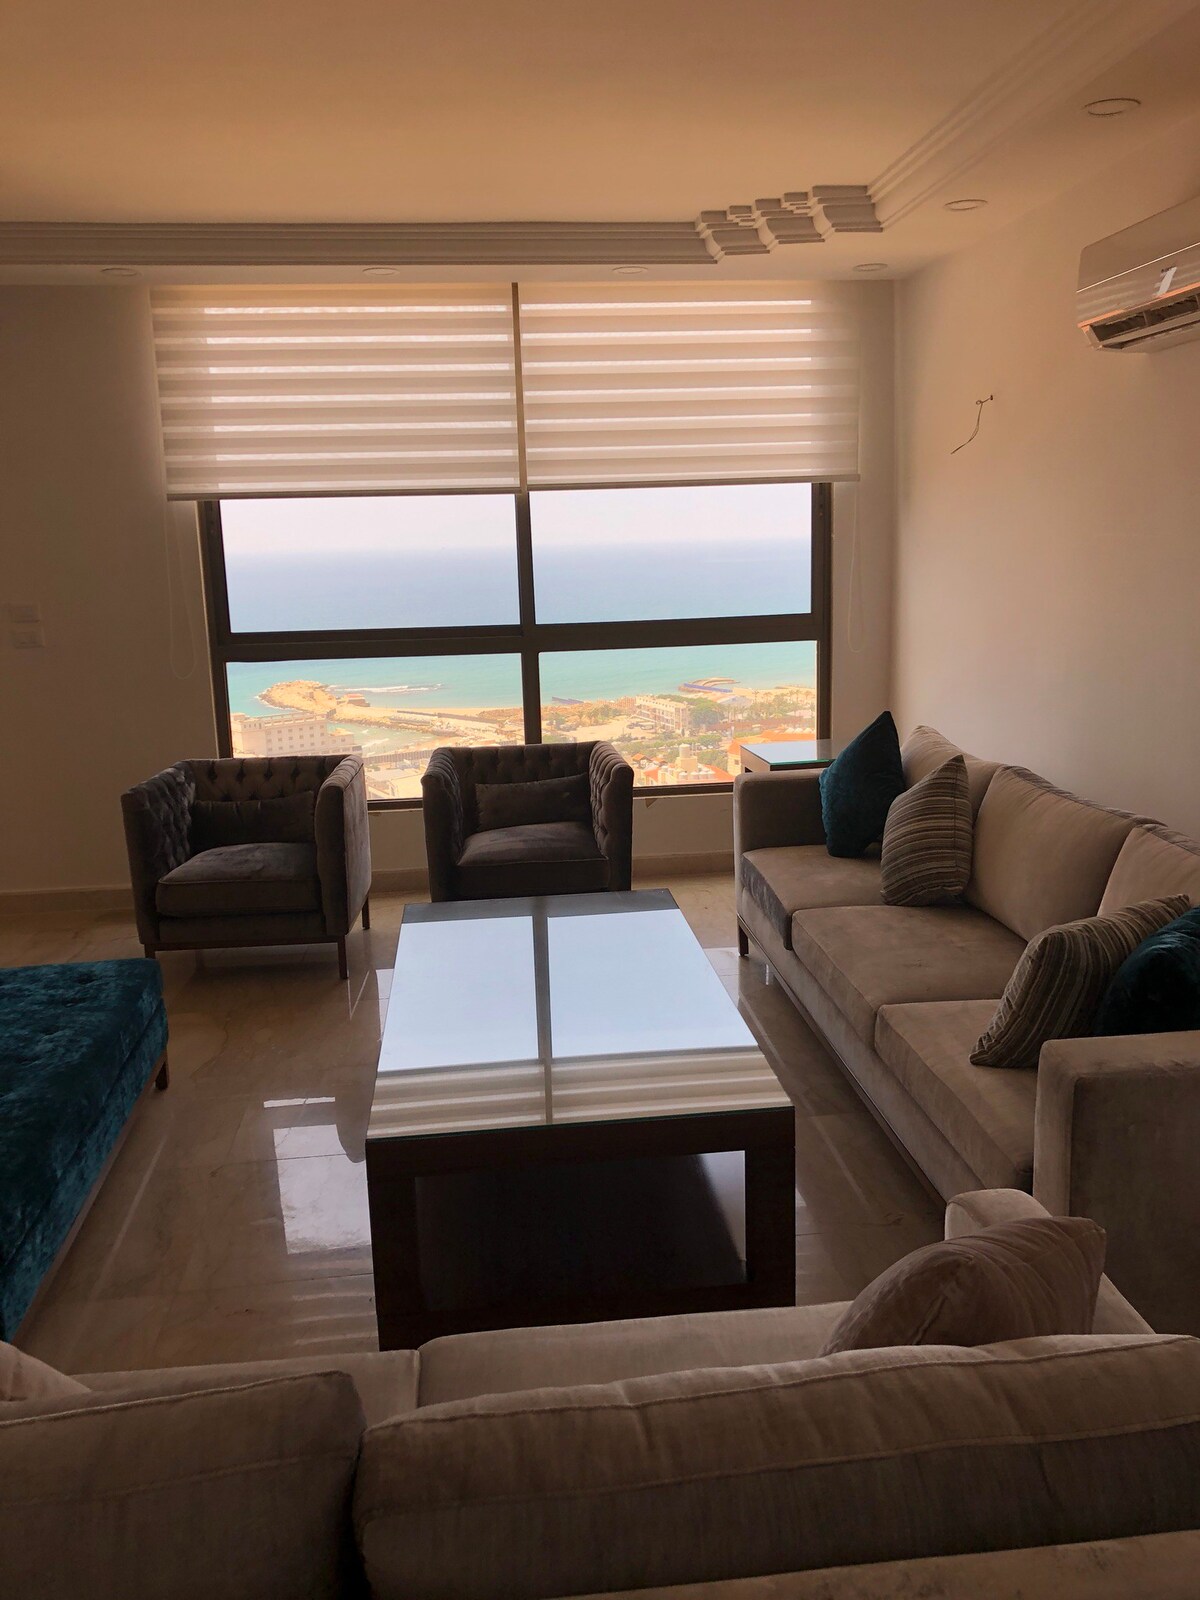 Duplex Apartment - Panoramic Beach Veiw